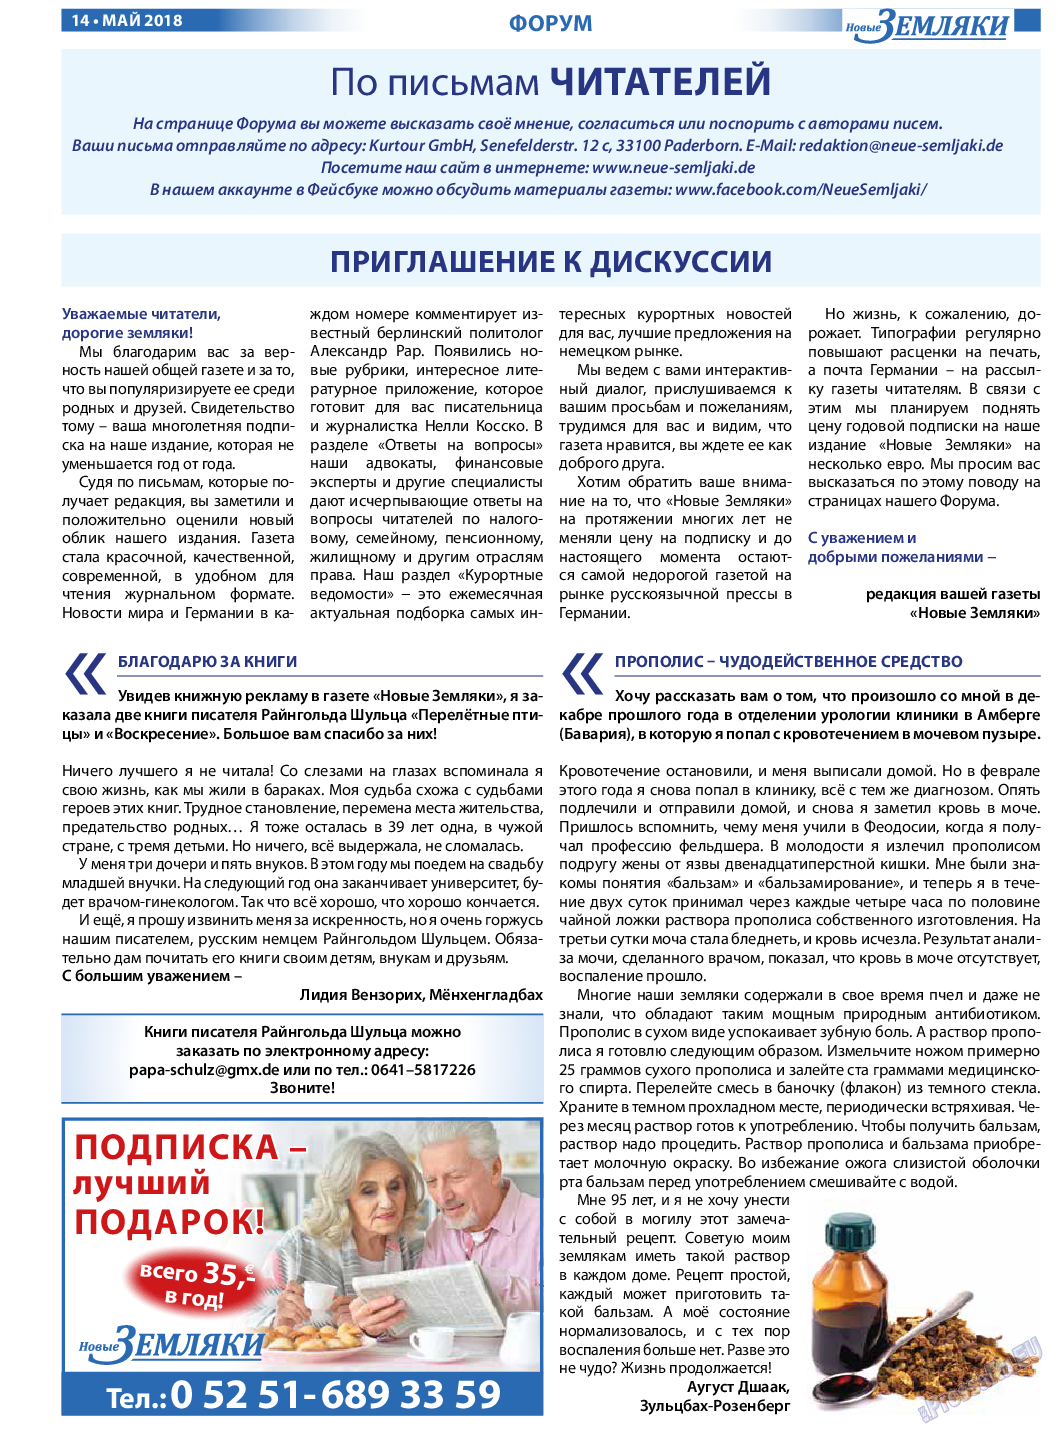 Новые Земляки (газета). 2018 год, номер 5, стр. 14